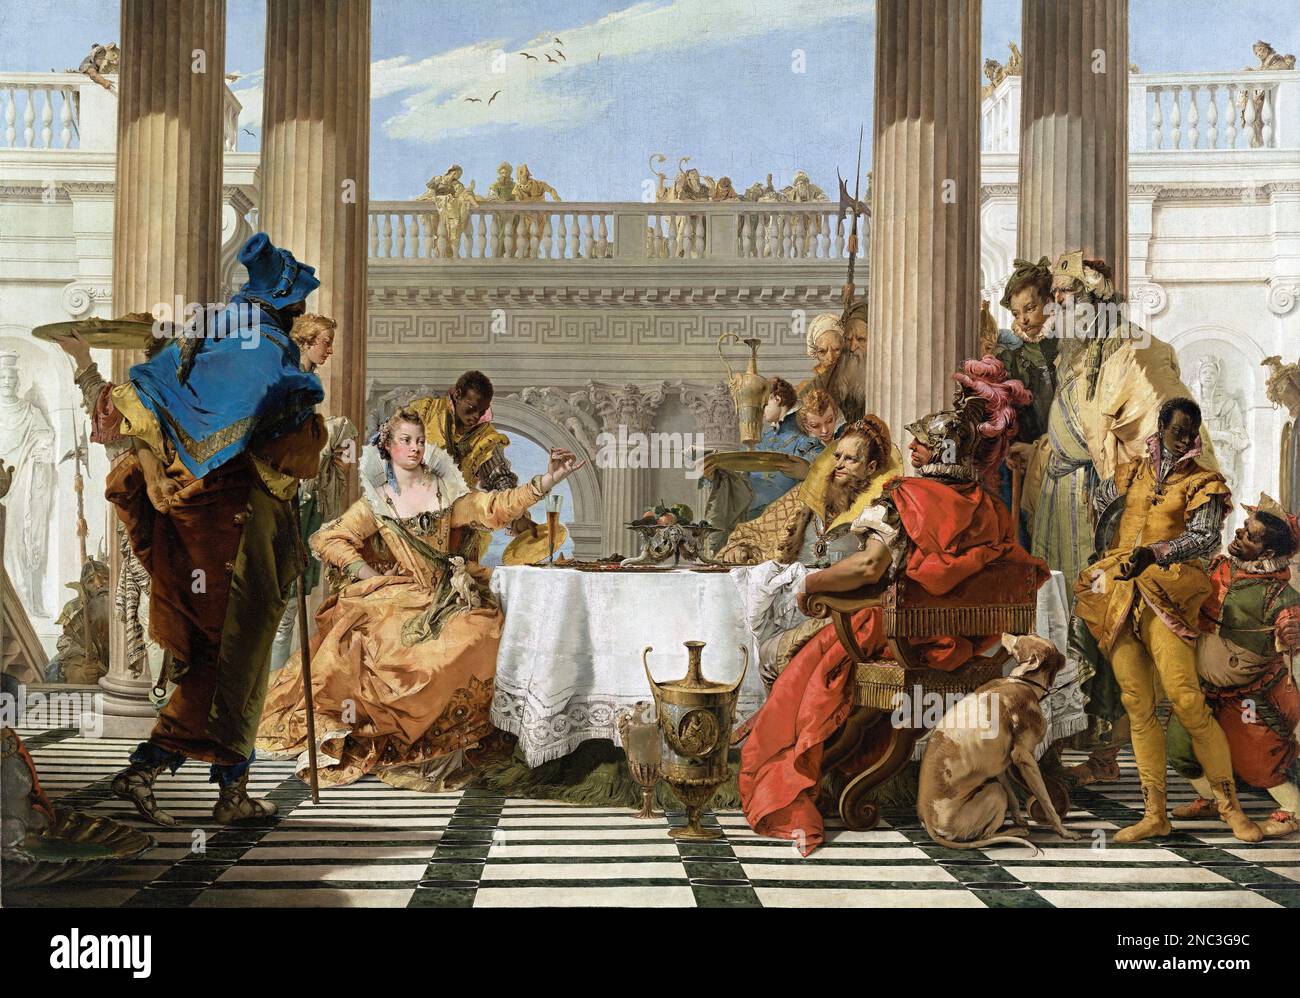 Le banquet de Cléopatra par Giovanni Battista Tiepolo (1696-1770), huile sur toile, 1743/4 Banque D'Images